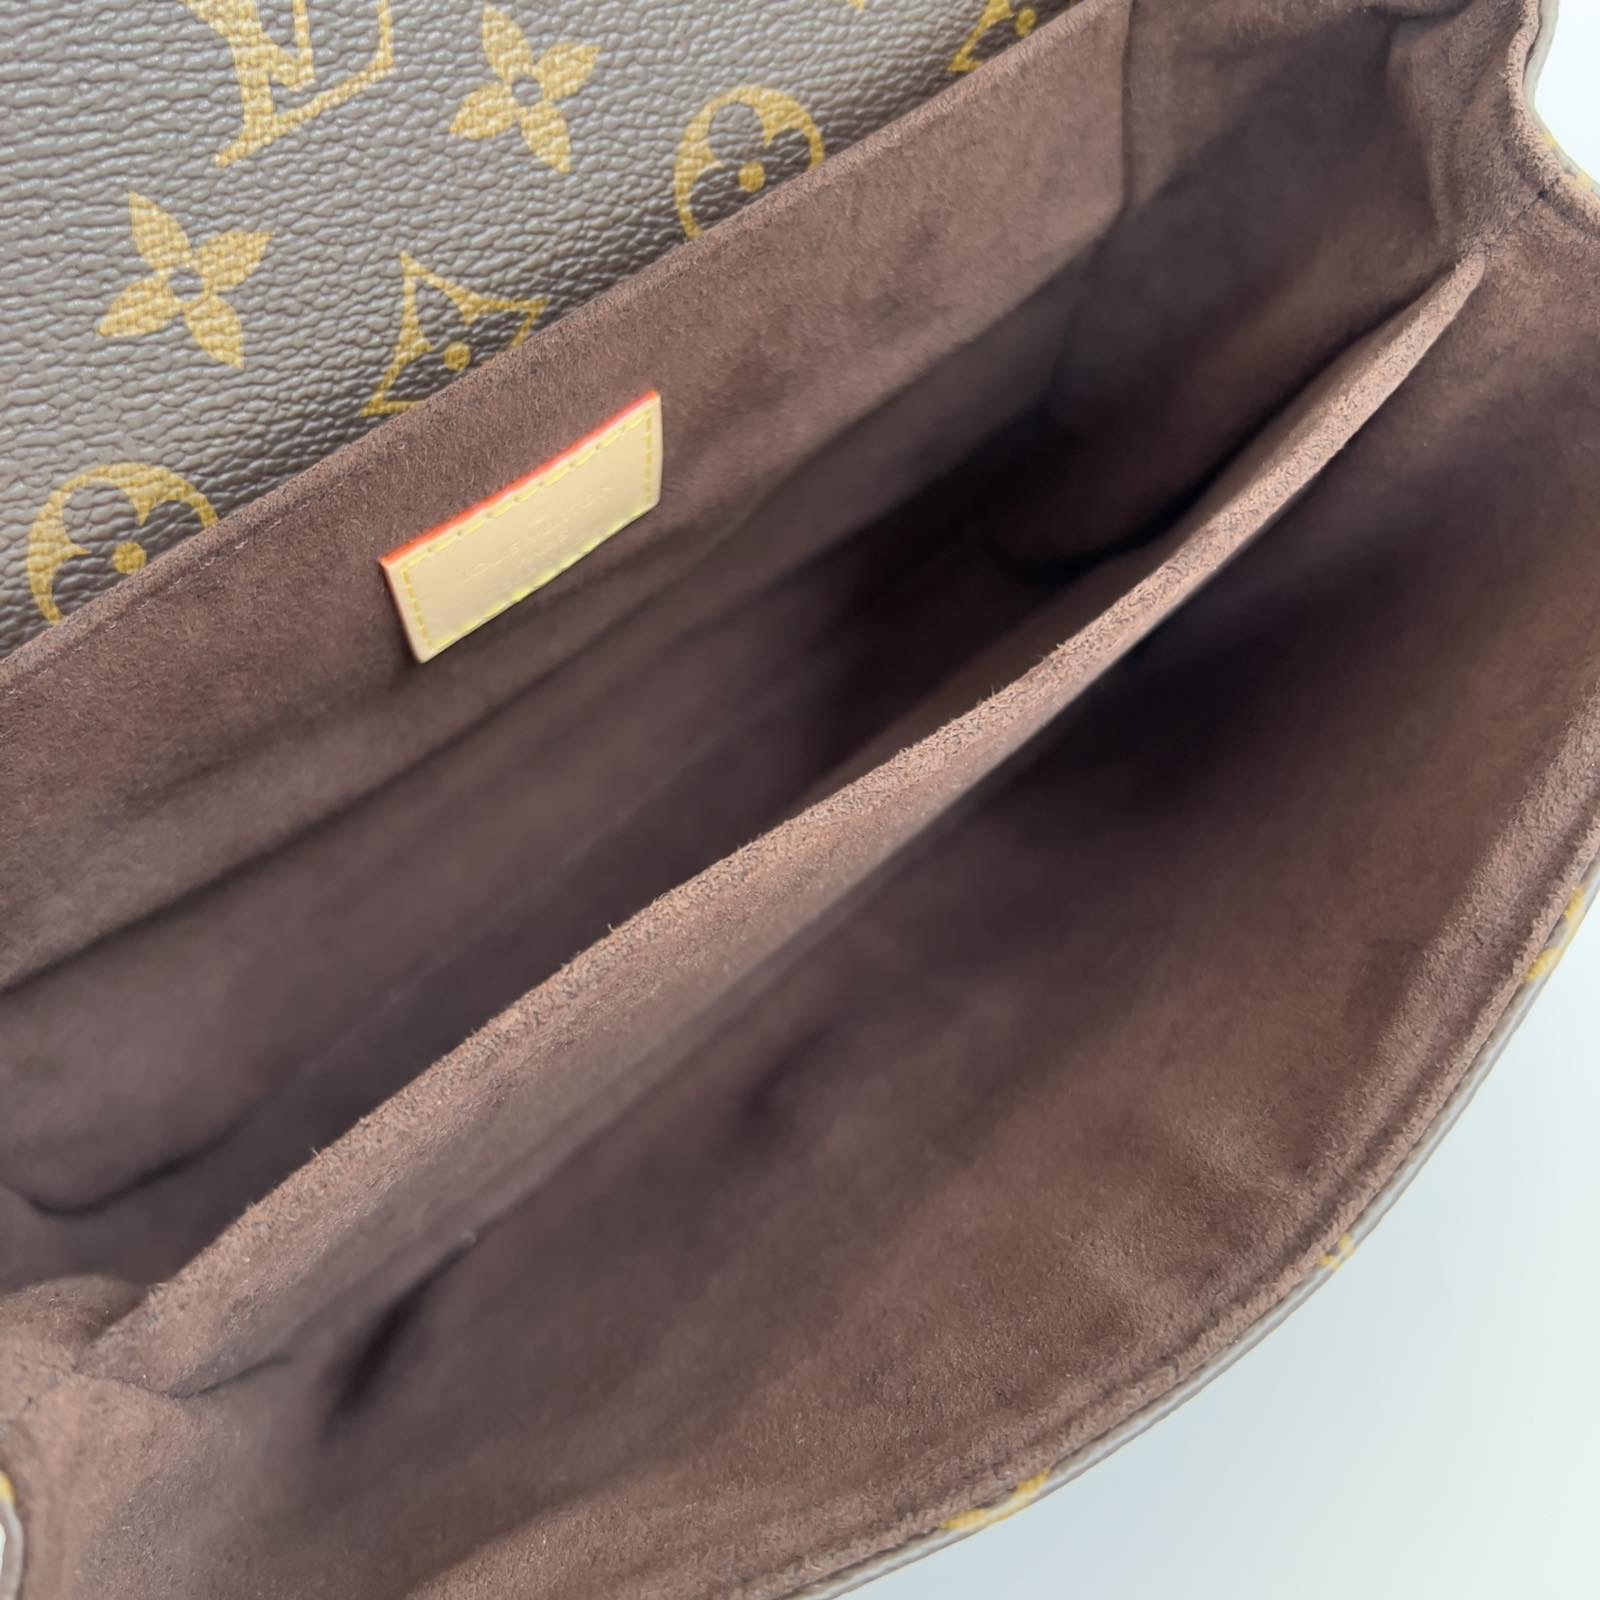 Authentic Louis Vuitton Mini Pochette Accessories Damier Ebene MADE IN 🇫🇷